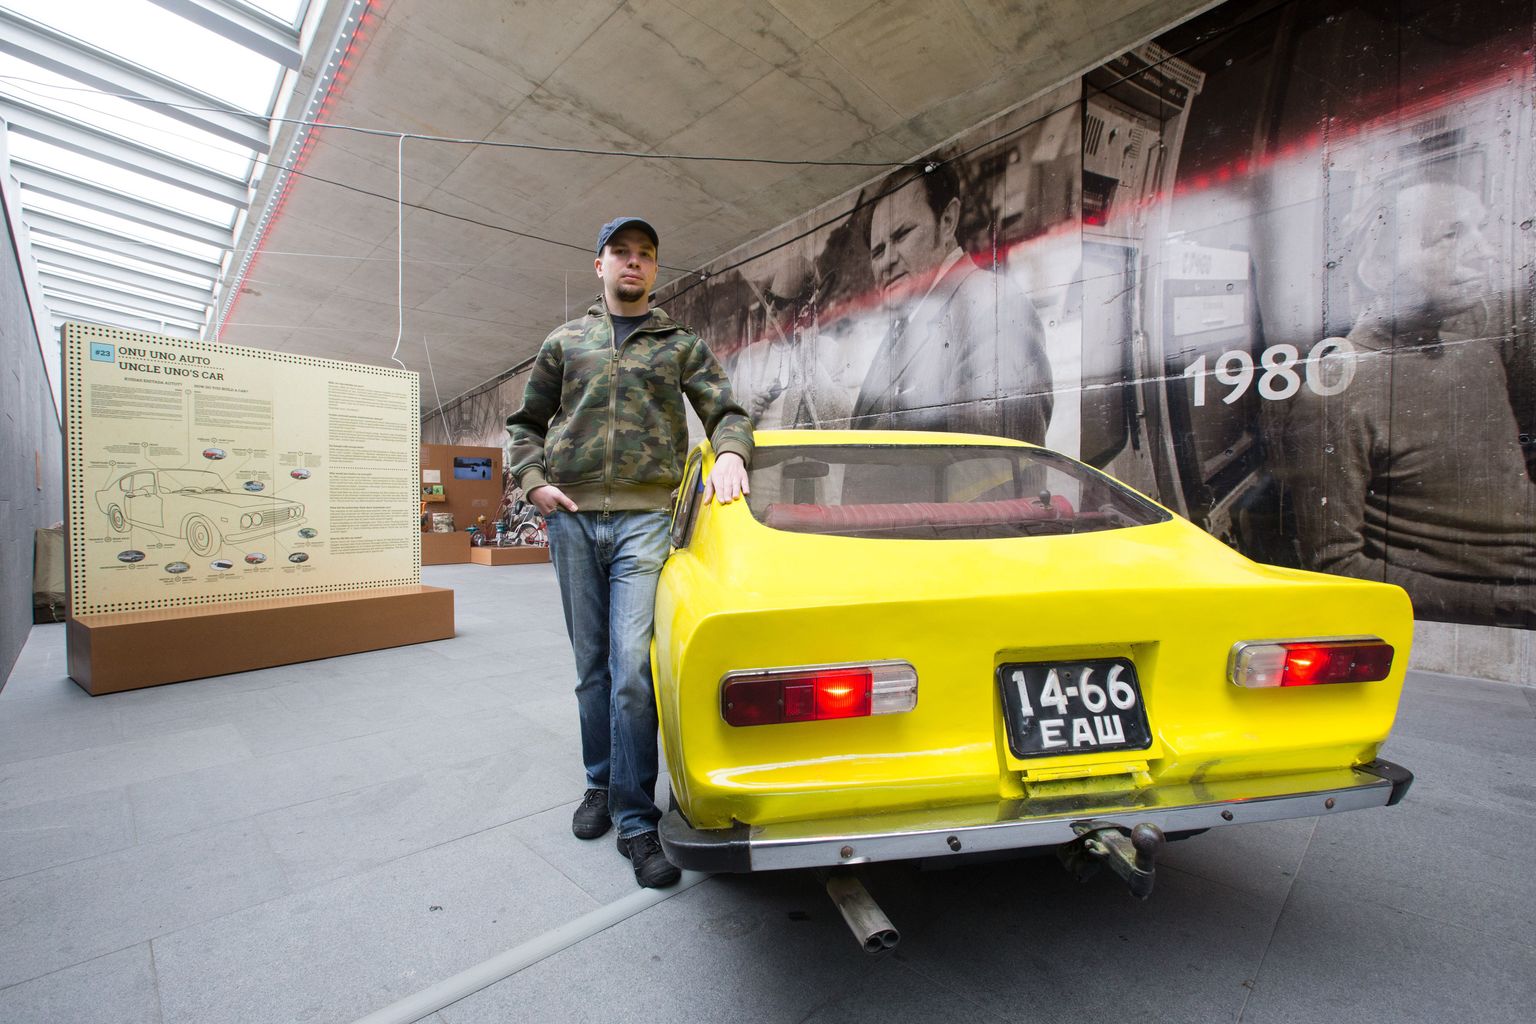 Näituse kõige suurem eksponaat: isevalmistatud auto Pisuhänd, mis kasutab Moskvitši, Žiguli, ZAZi ja GAZi agregaate. Selle masinaga sõitis ehitaja suurel kodumaal reisides läbi üle 50 000 kilomeetri. Muu hulgas jõuti ka Musta mere äärde.